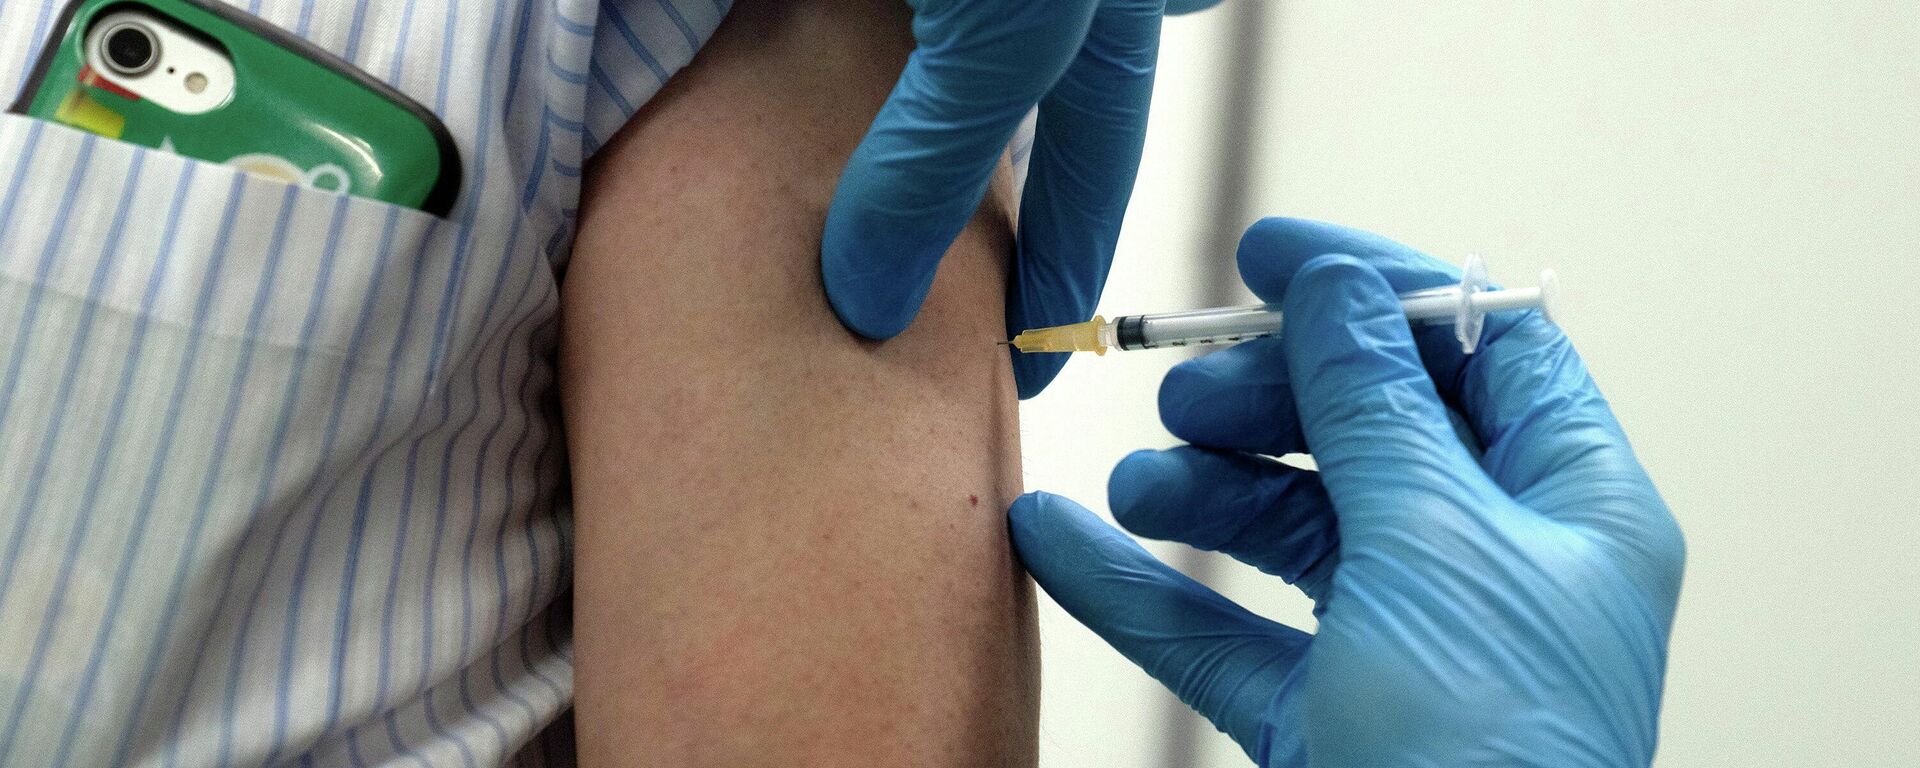 Медработник делает прививку от коронавируса вакциной Moderna - Sputnik Lietuva, 1920, 07.06.2021